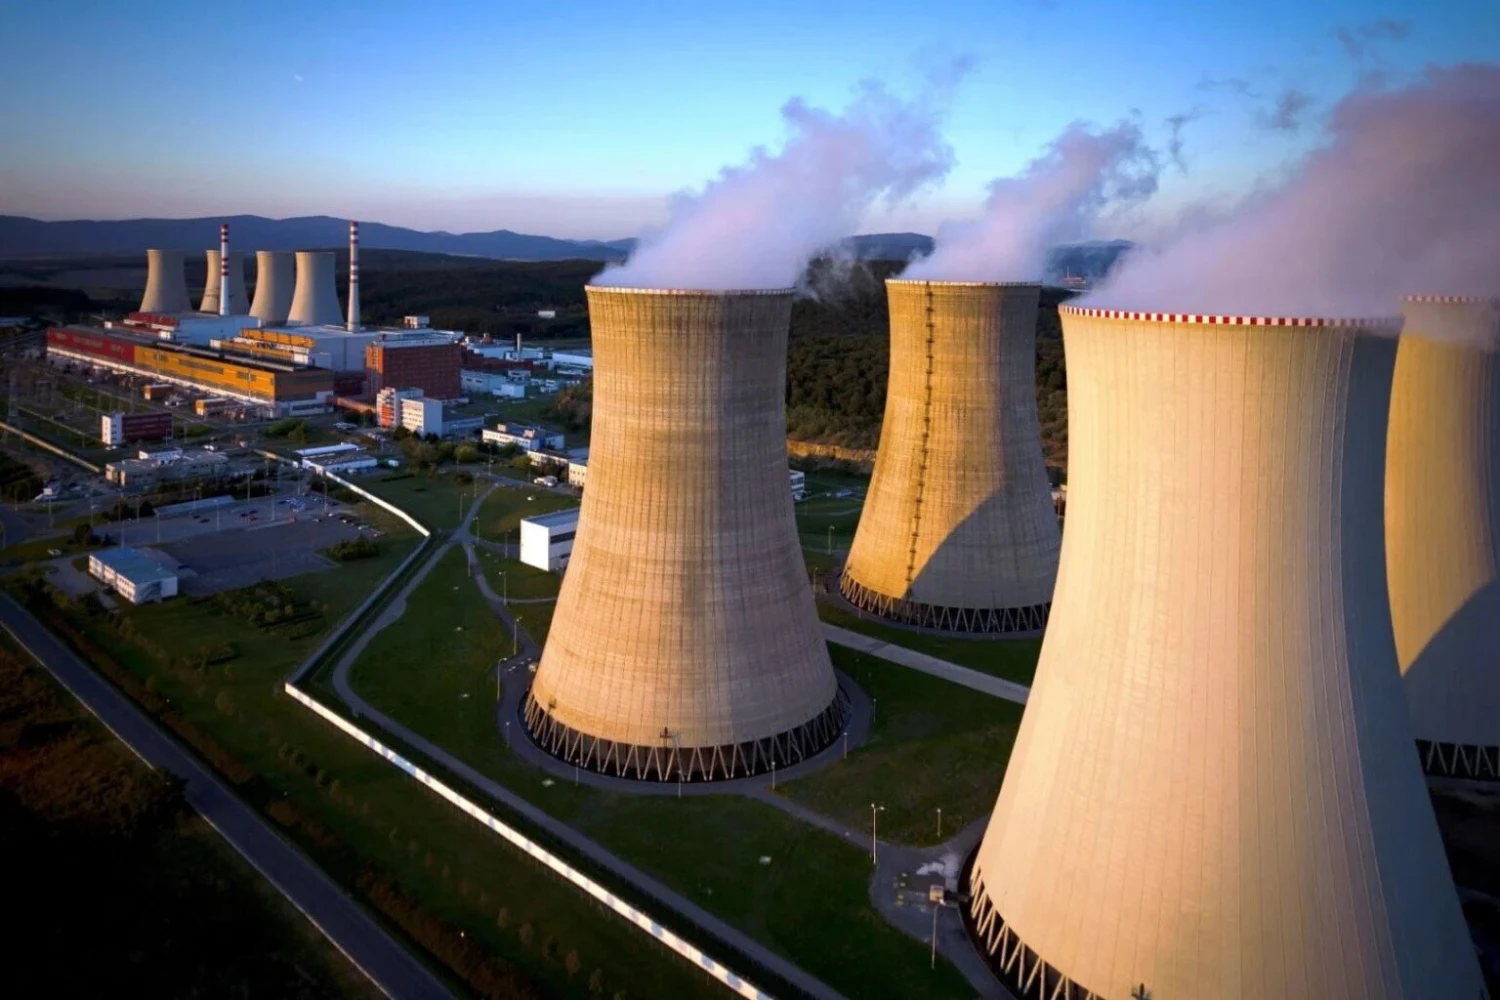 Jaderné palivo od Američanů. Slovenské elektrárne podepsaly smlouvu s Westinghouse